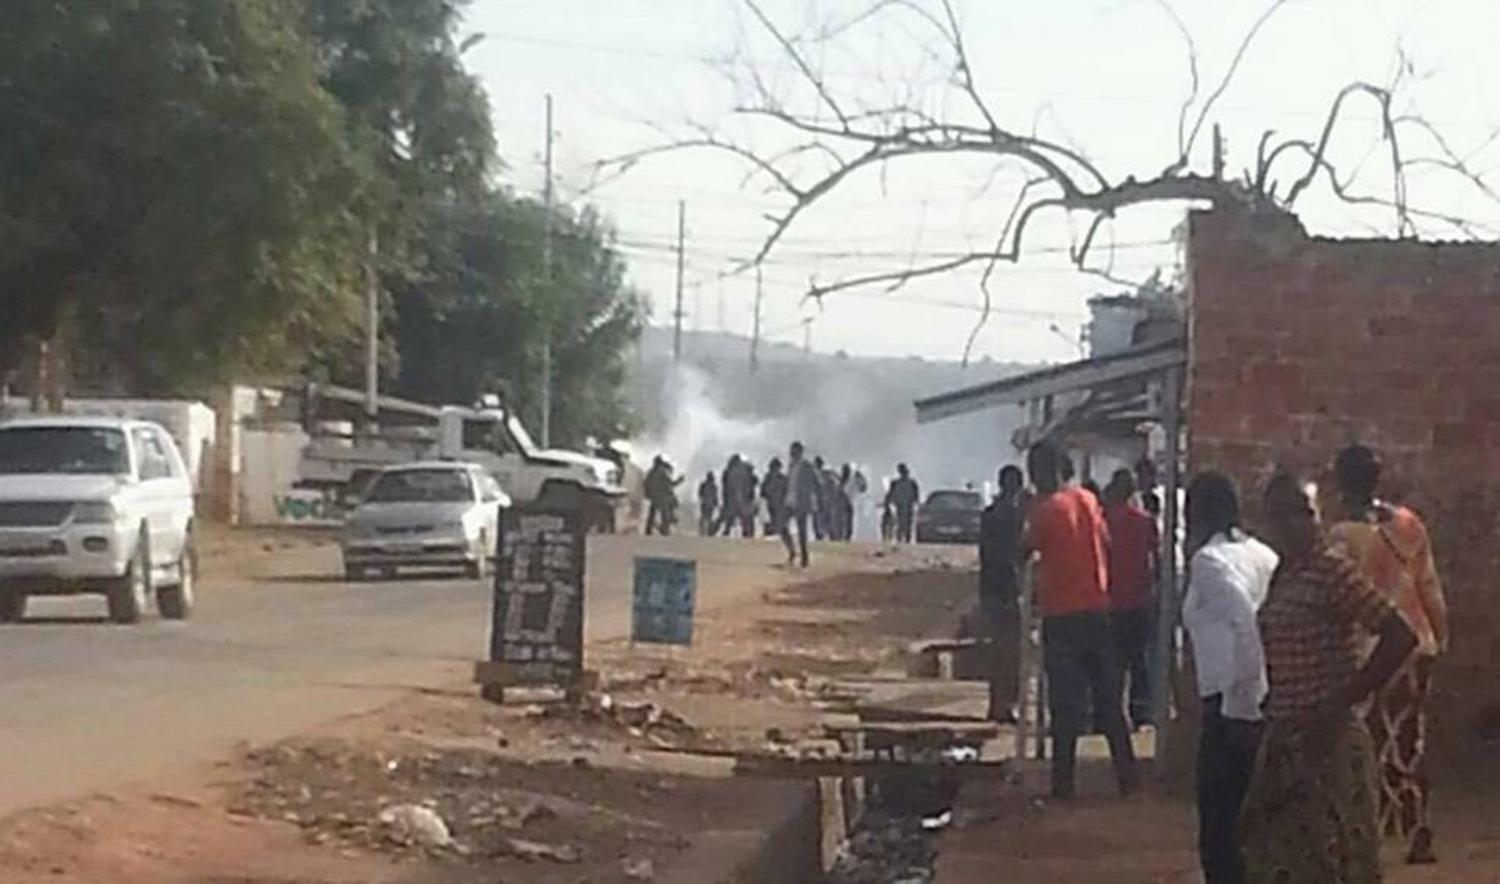 La police a tiré des cartouches de gaz lacrymogène pour empêcher le déroulement d'une réunion politique pacifique de l'opposition le 24 avril 2016 à Lubumbashi, dans le sud de la République démocratique du Congo. Un candidat à l'élection présidentielle, M